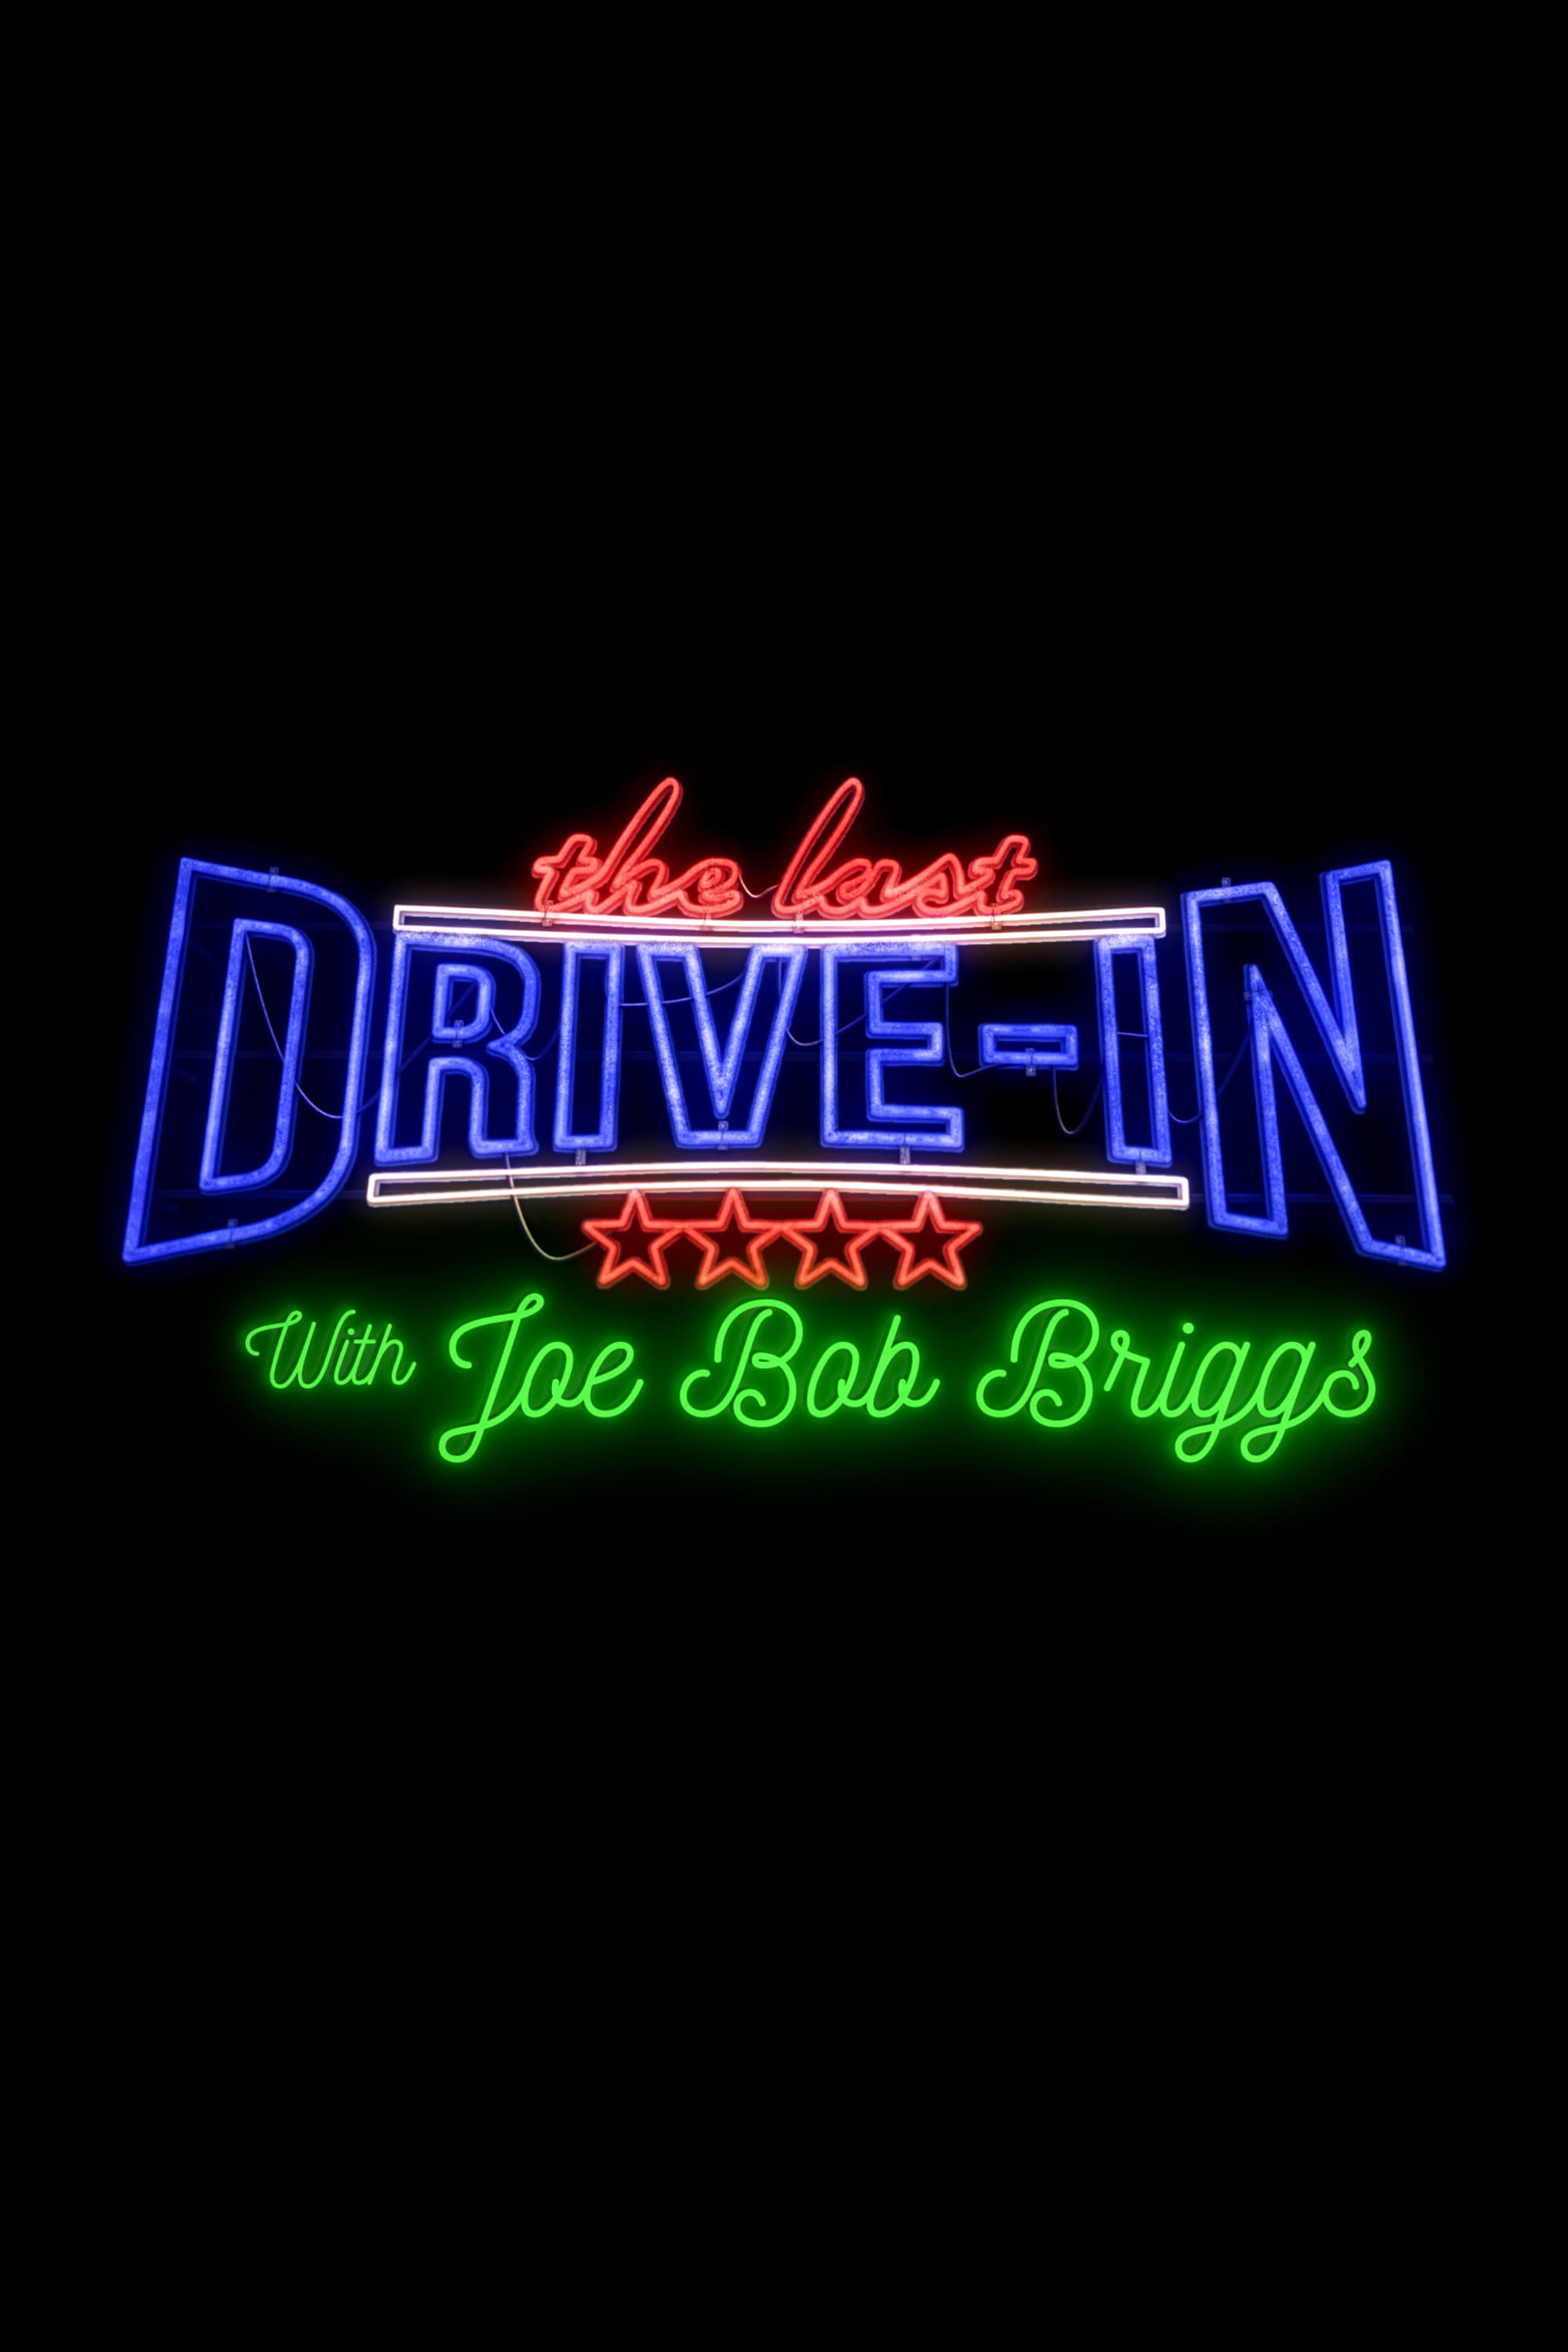 The Last Drive-in with Joe Bob Briggs